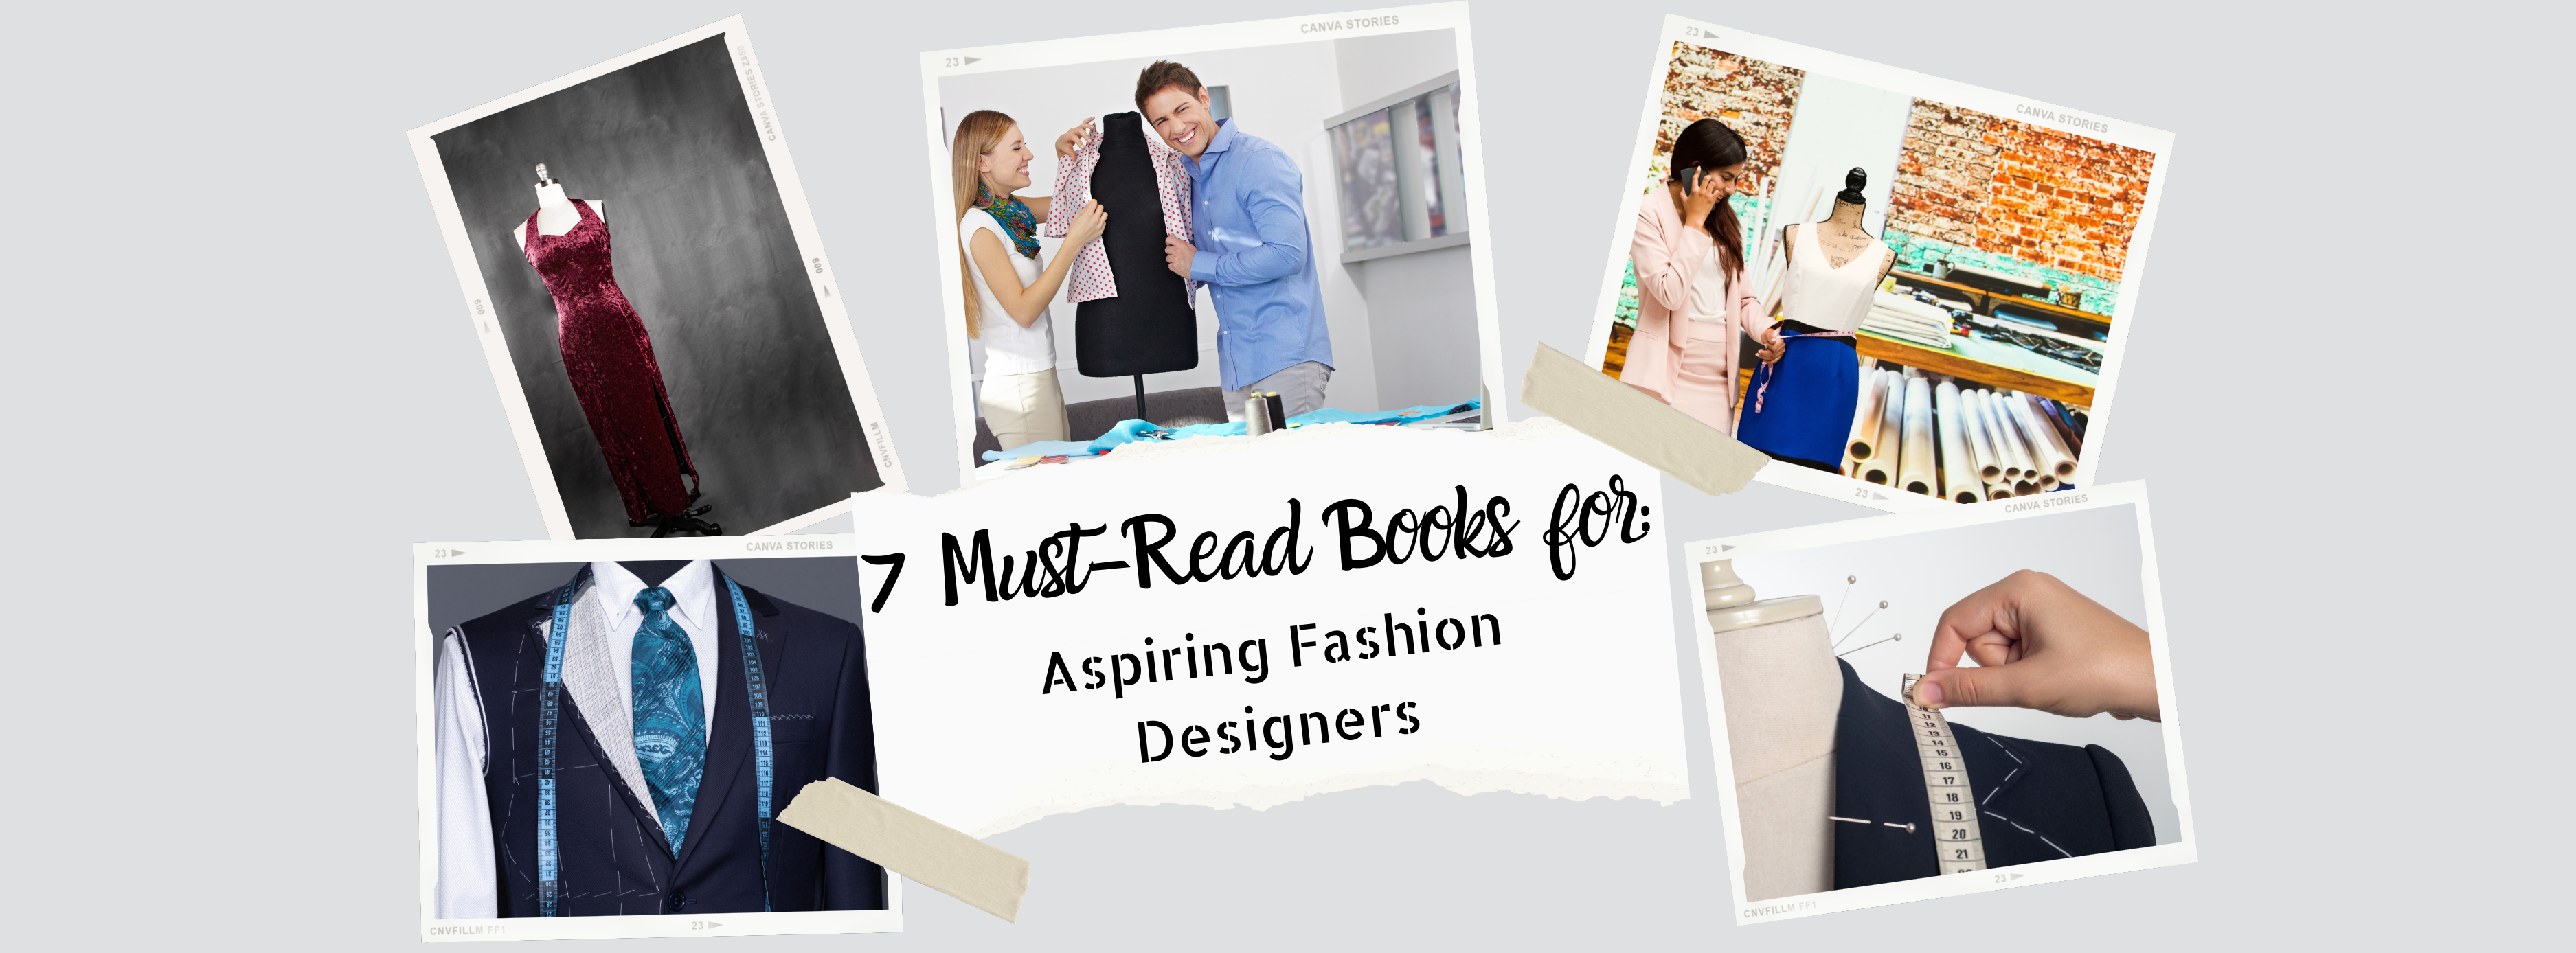 Fashion: Inspirational Books for Aspiring Designers